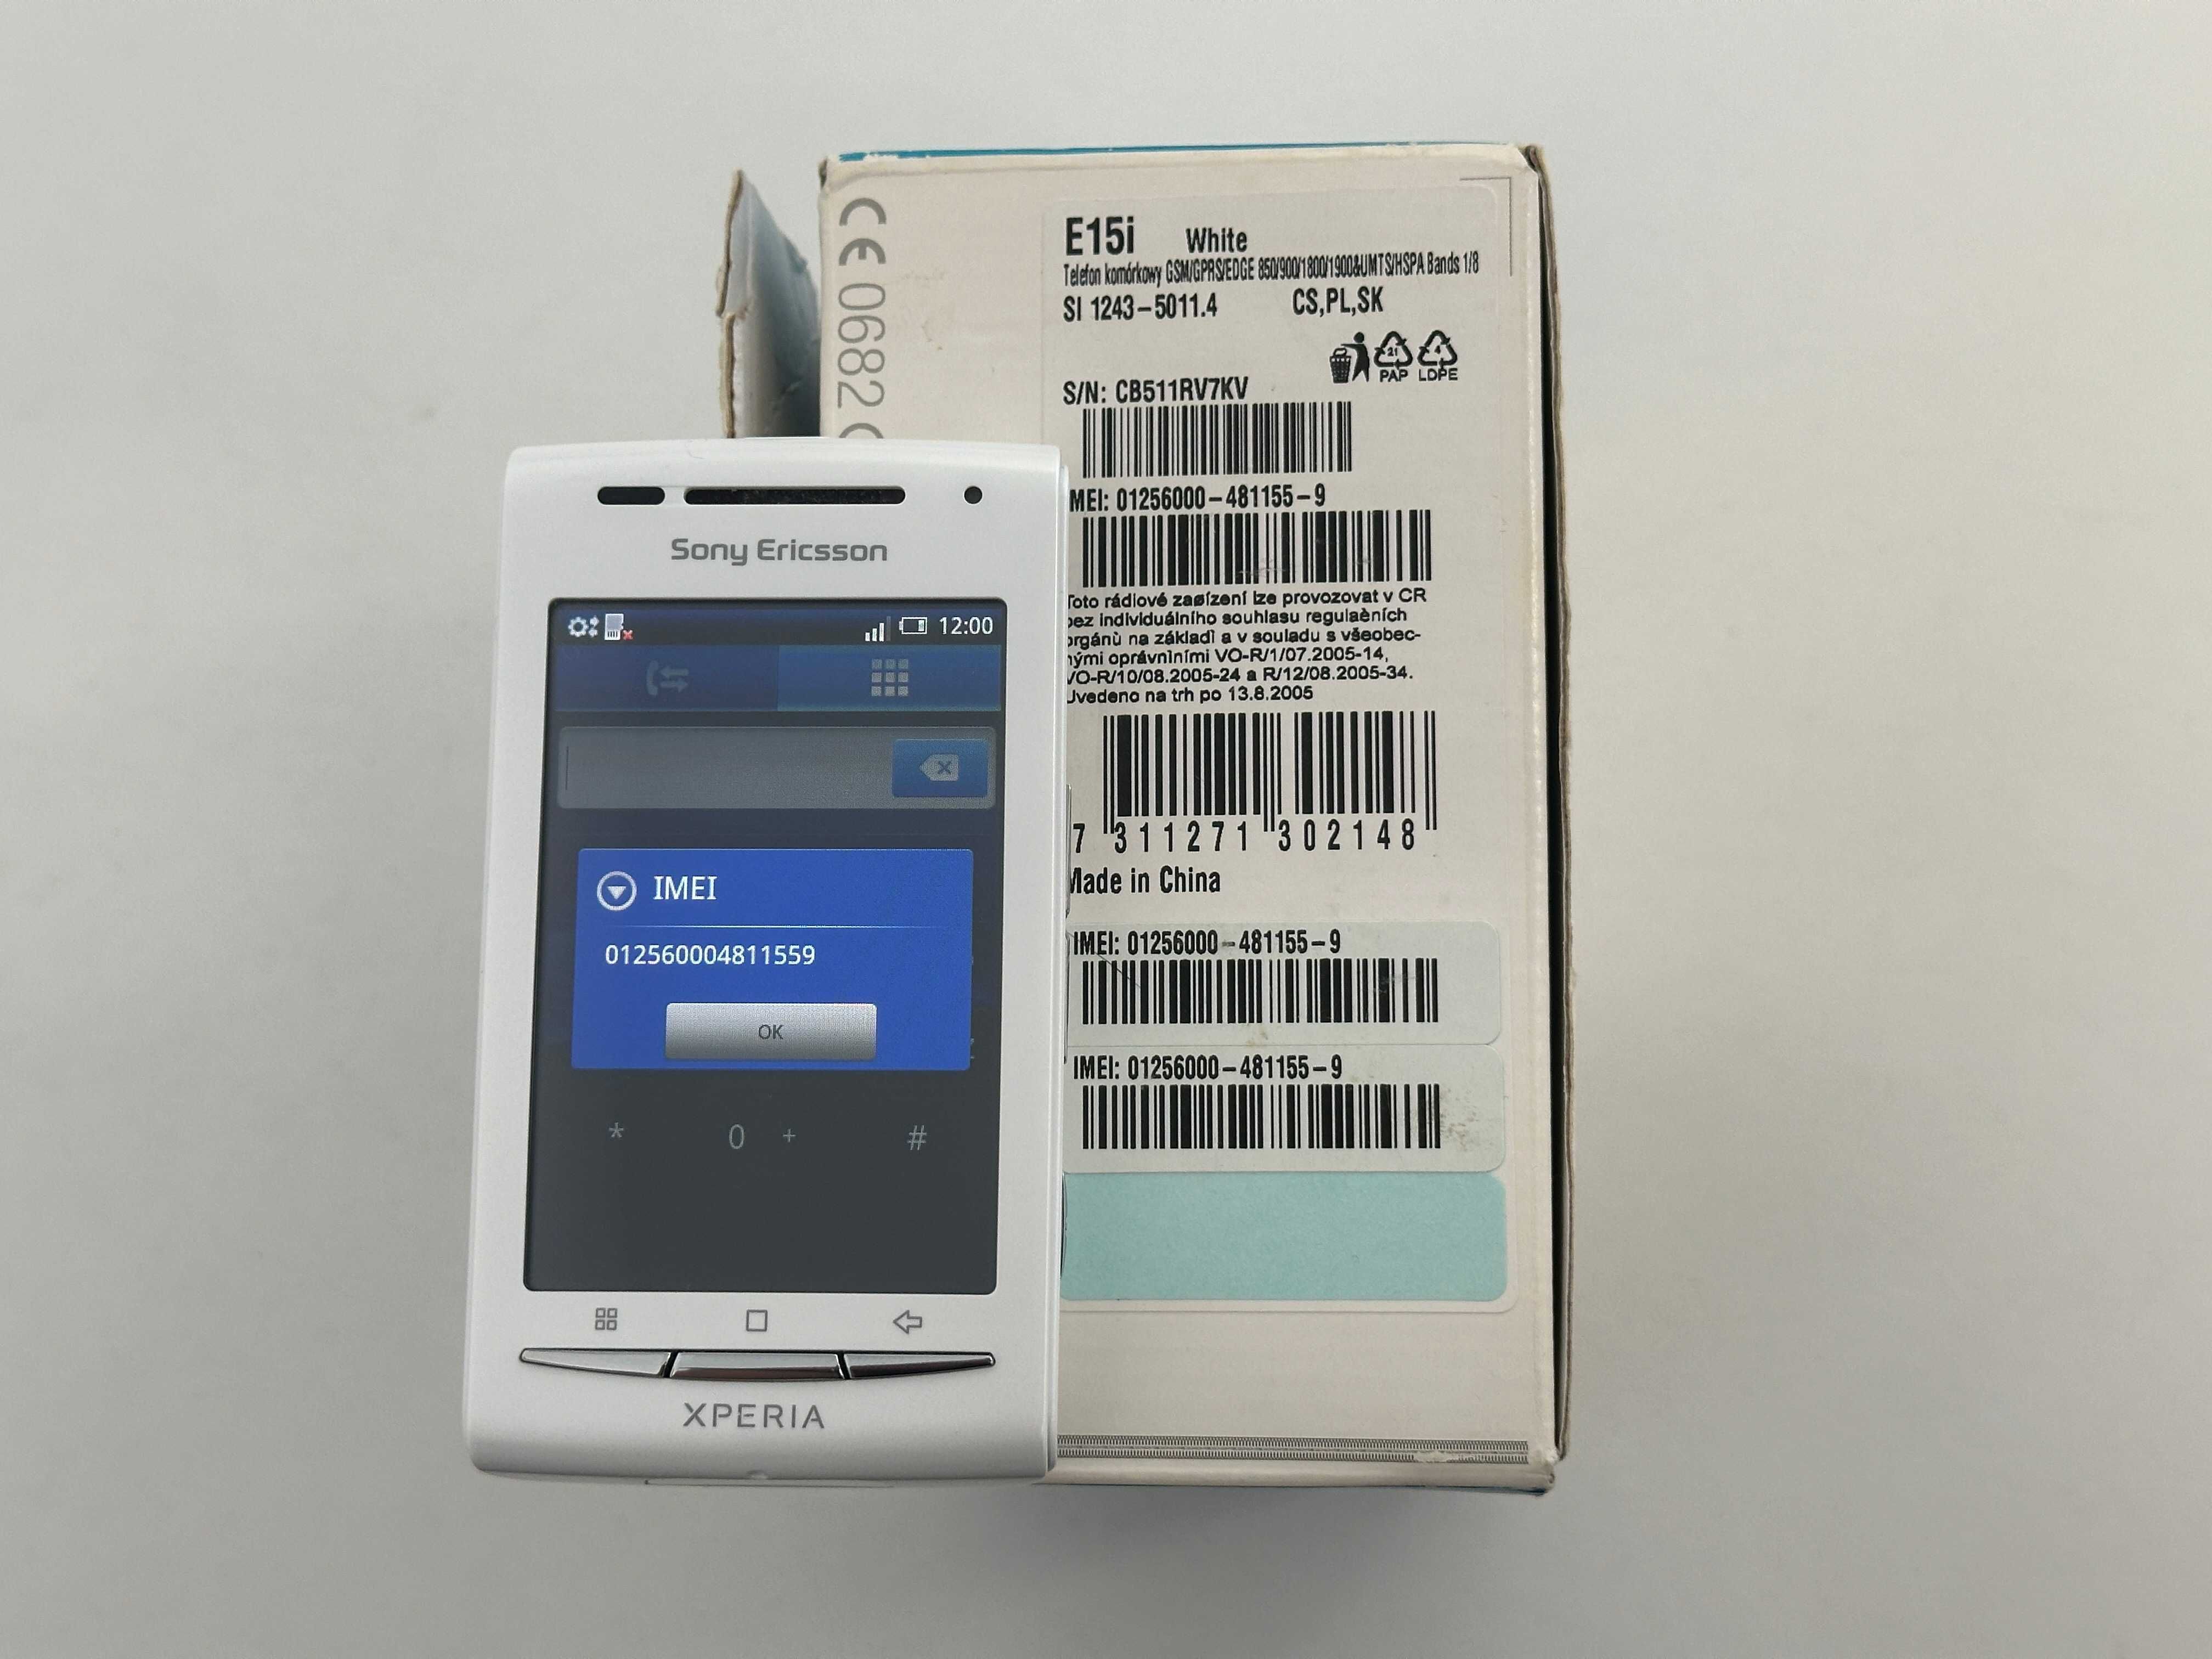 2x Sony Ericsson: W8 Walkman + Xperia X8 sprawne, bez blokad, UNIKAT!